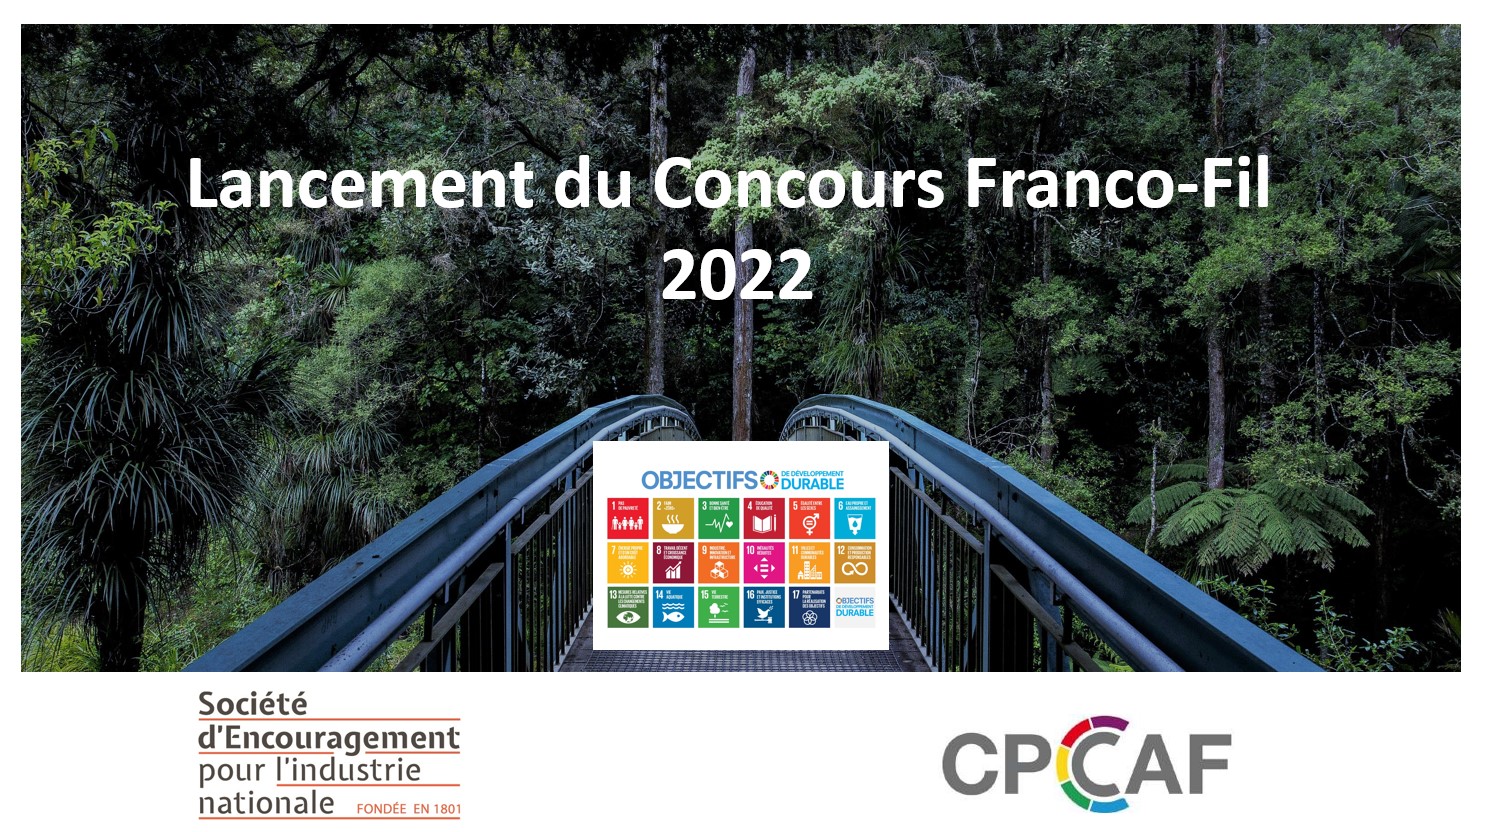 Concours Franco-fil 2022 pour les entrepreneurs des pays francophone et francophile